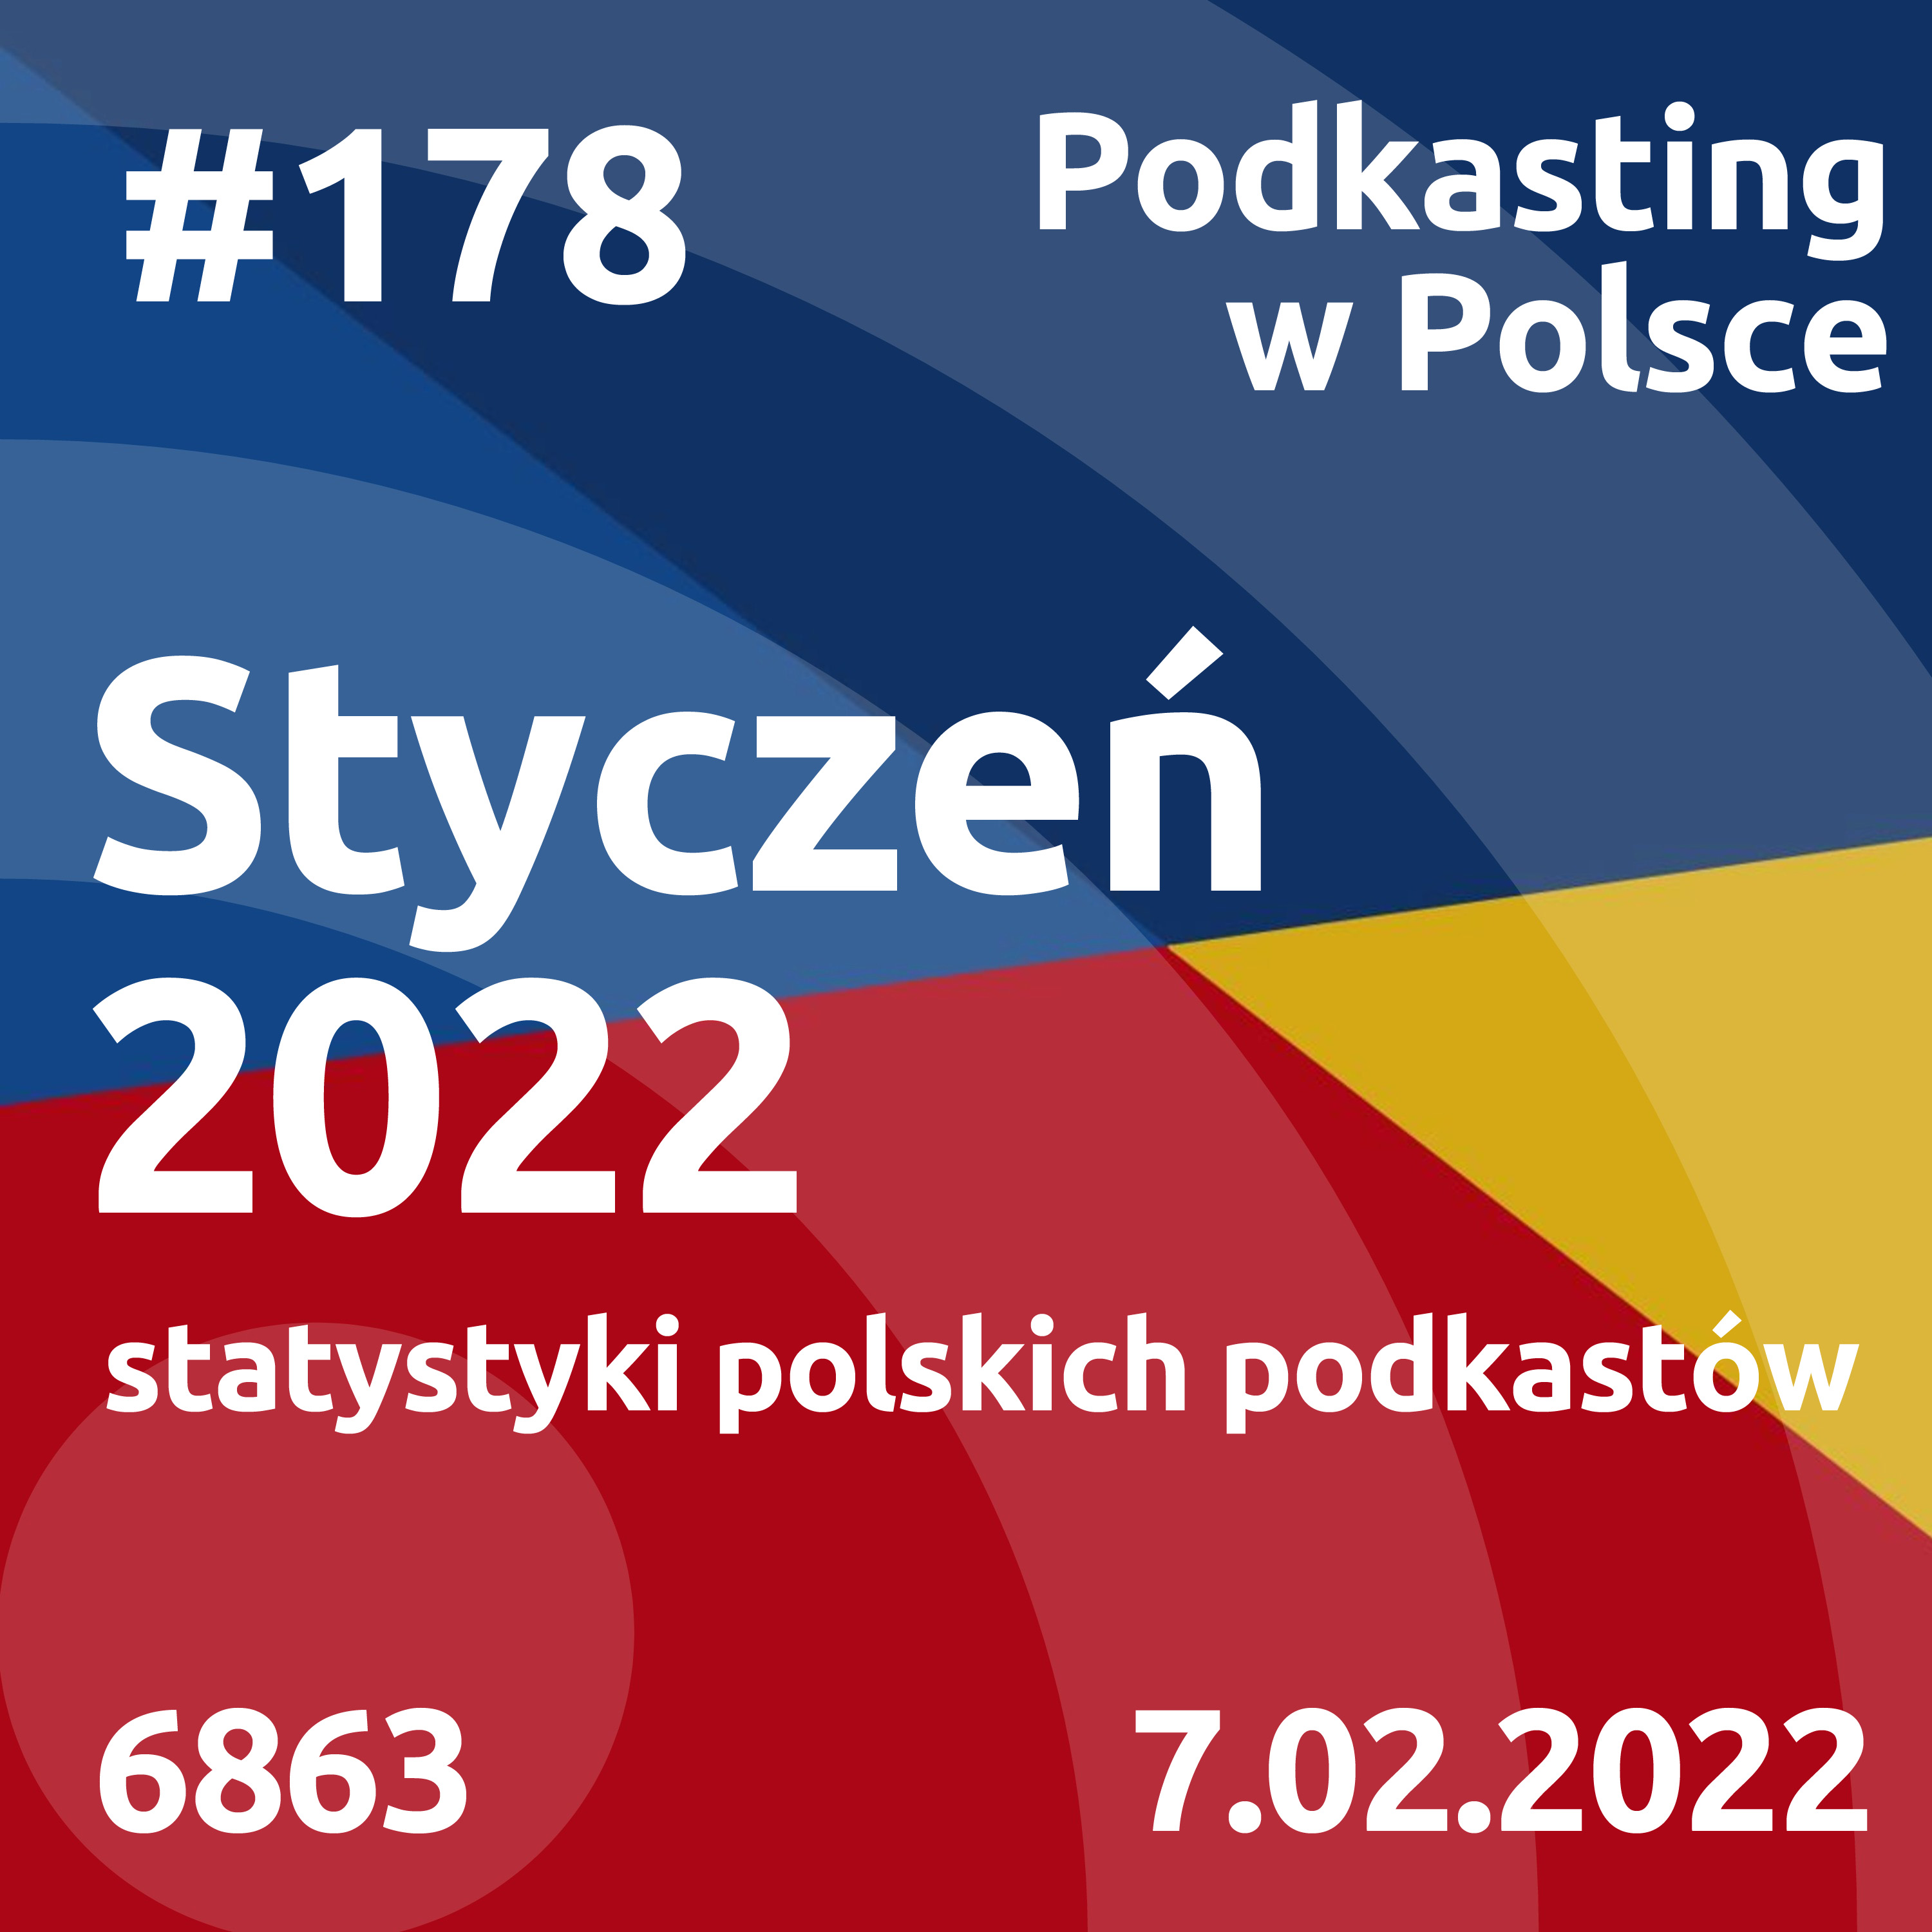 #178 - Styczeń 2022, statystyki